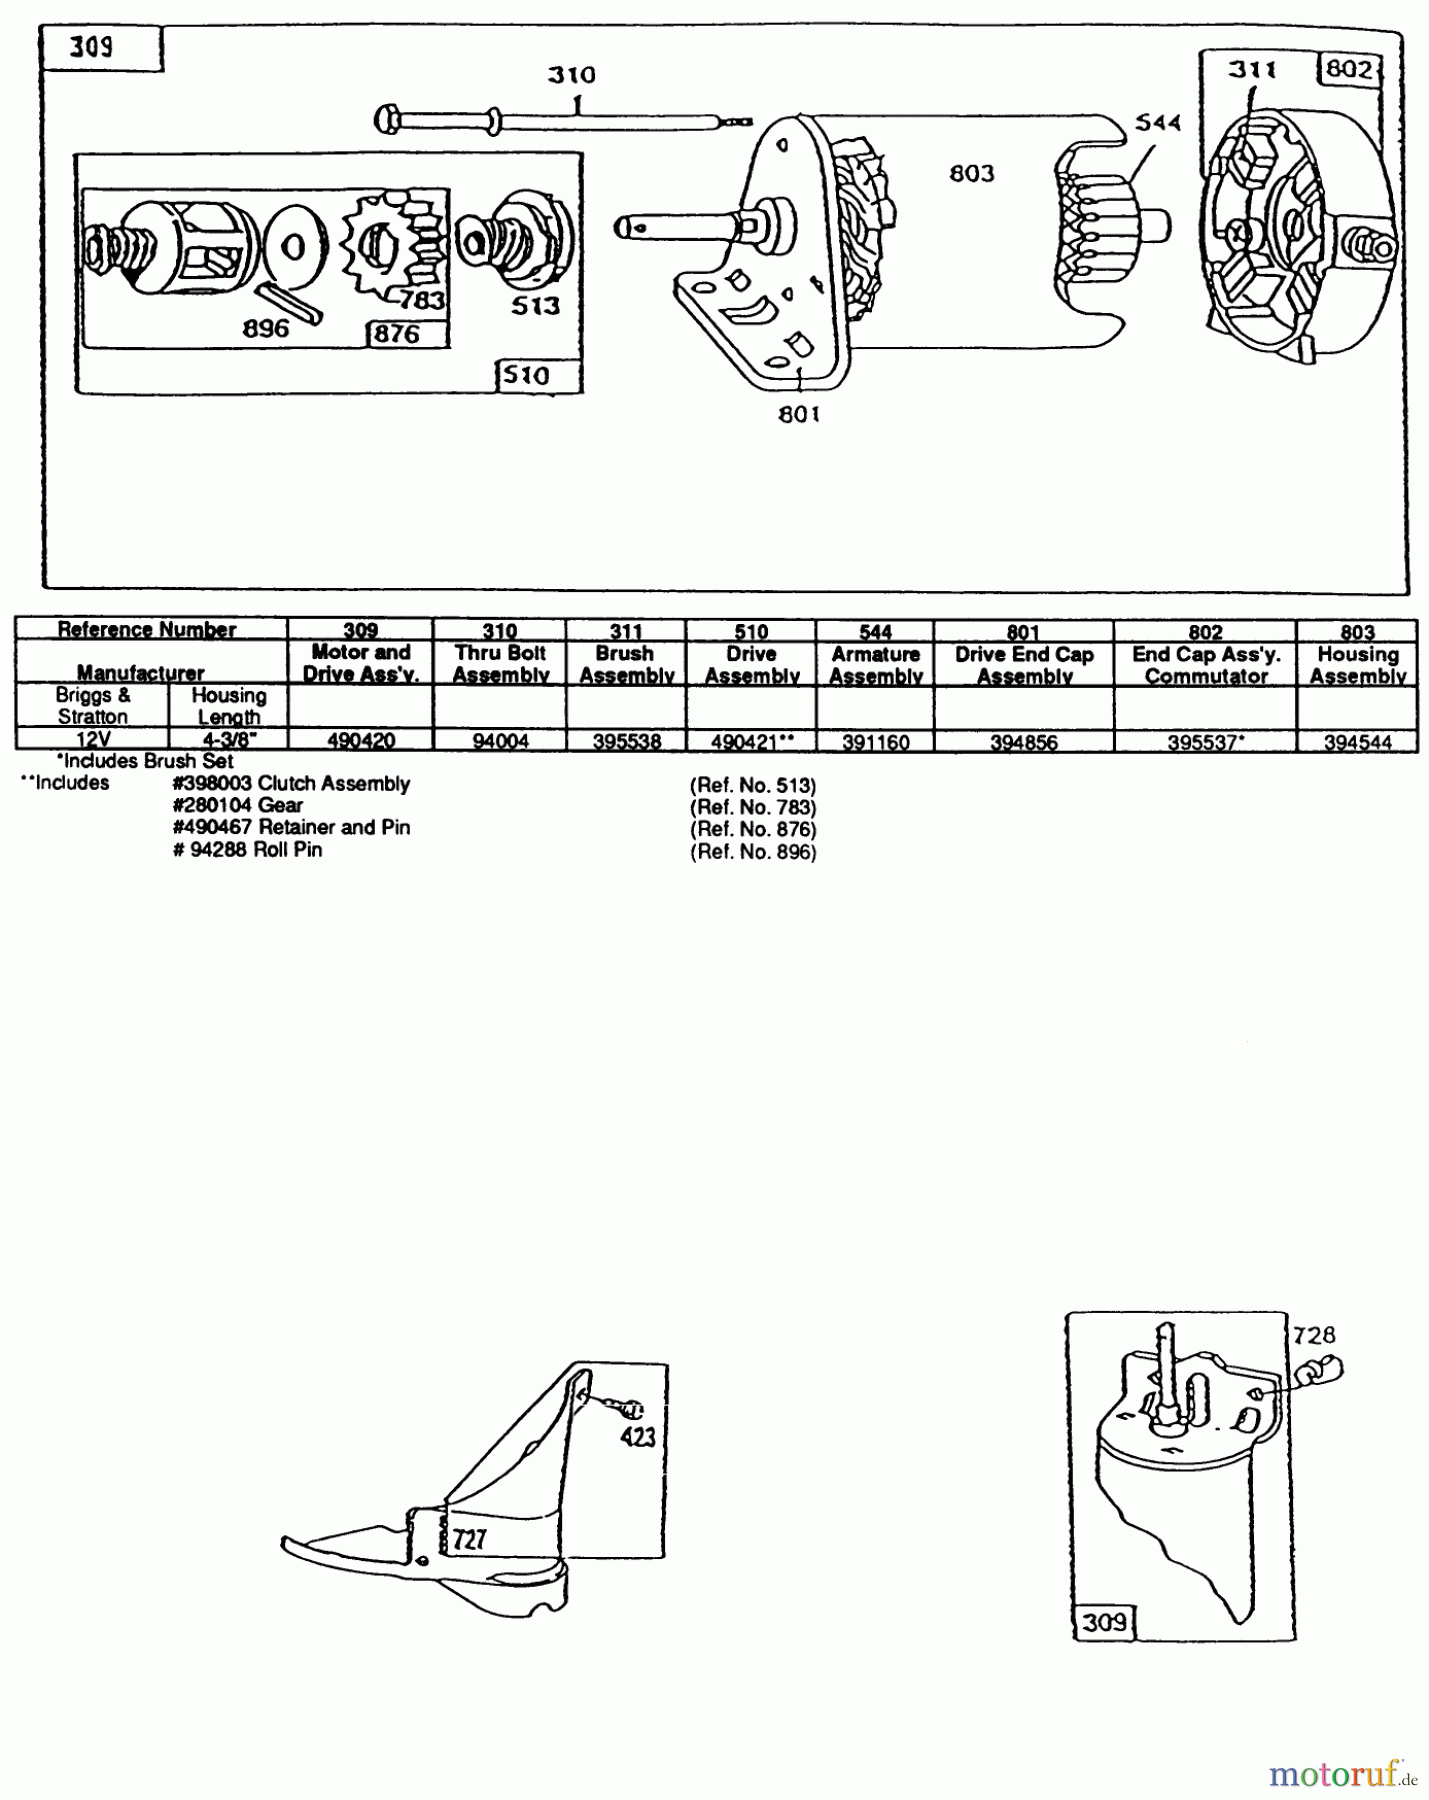  Toro Neu Mowers, Lawn & Garden Tractor Seite 1 32-120EA1 (212-H)- Toro 212-H Tractor, 1991 (1000001-1999999) ENGINE BRIGGS AND STRATTON MODEL 281707-0226-01 #3